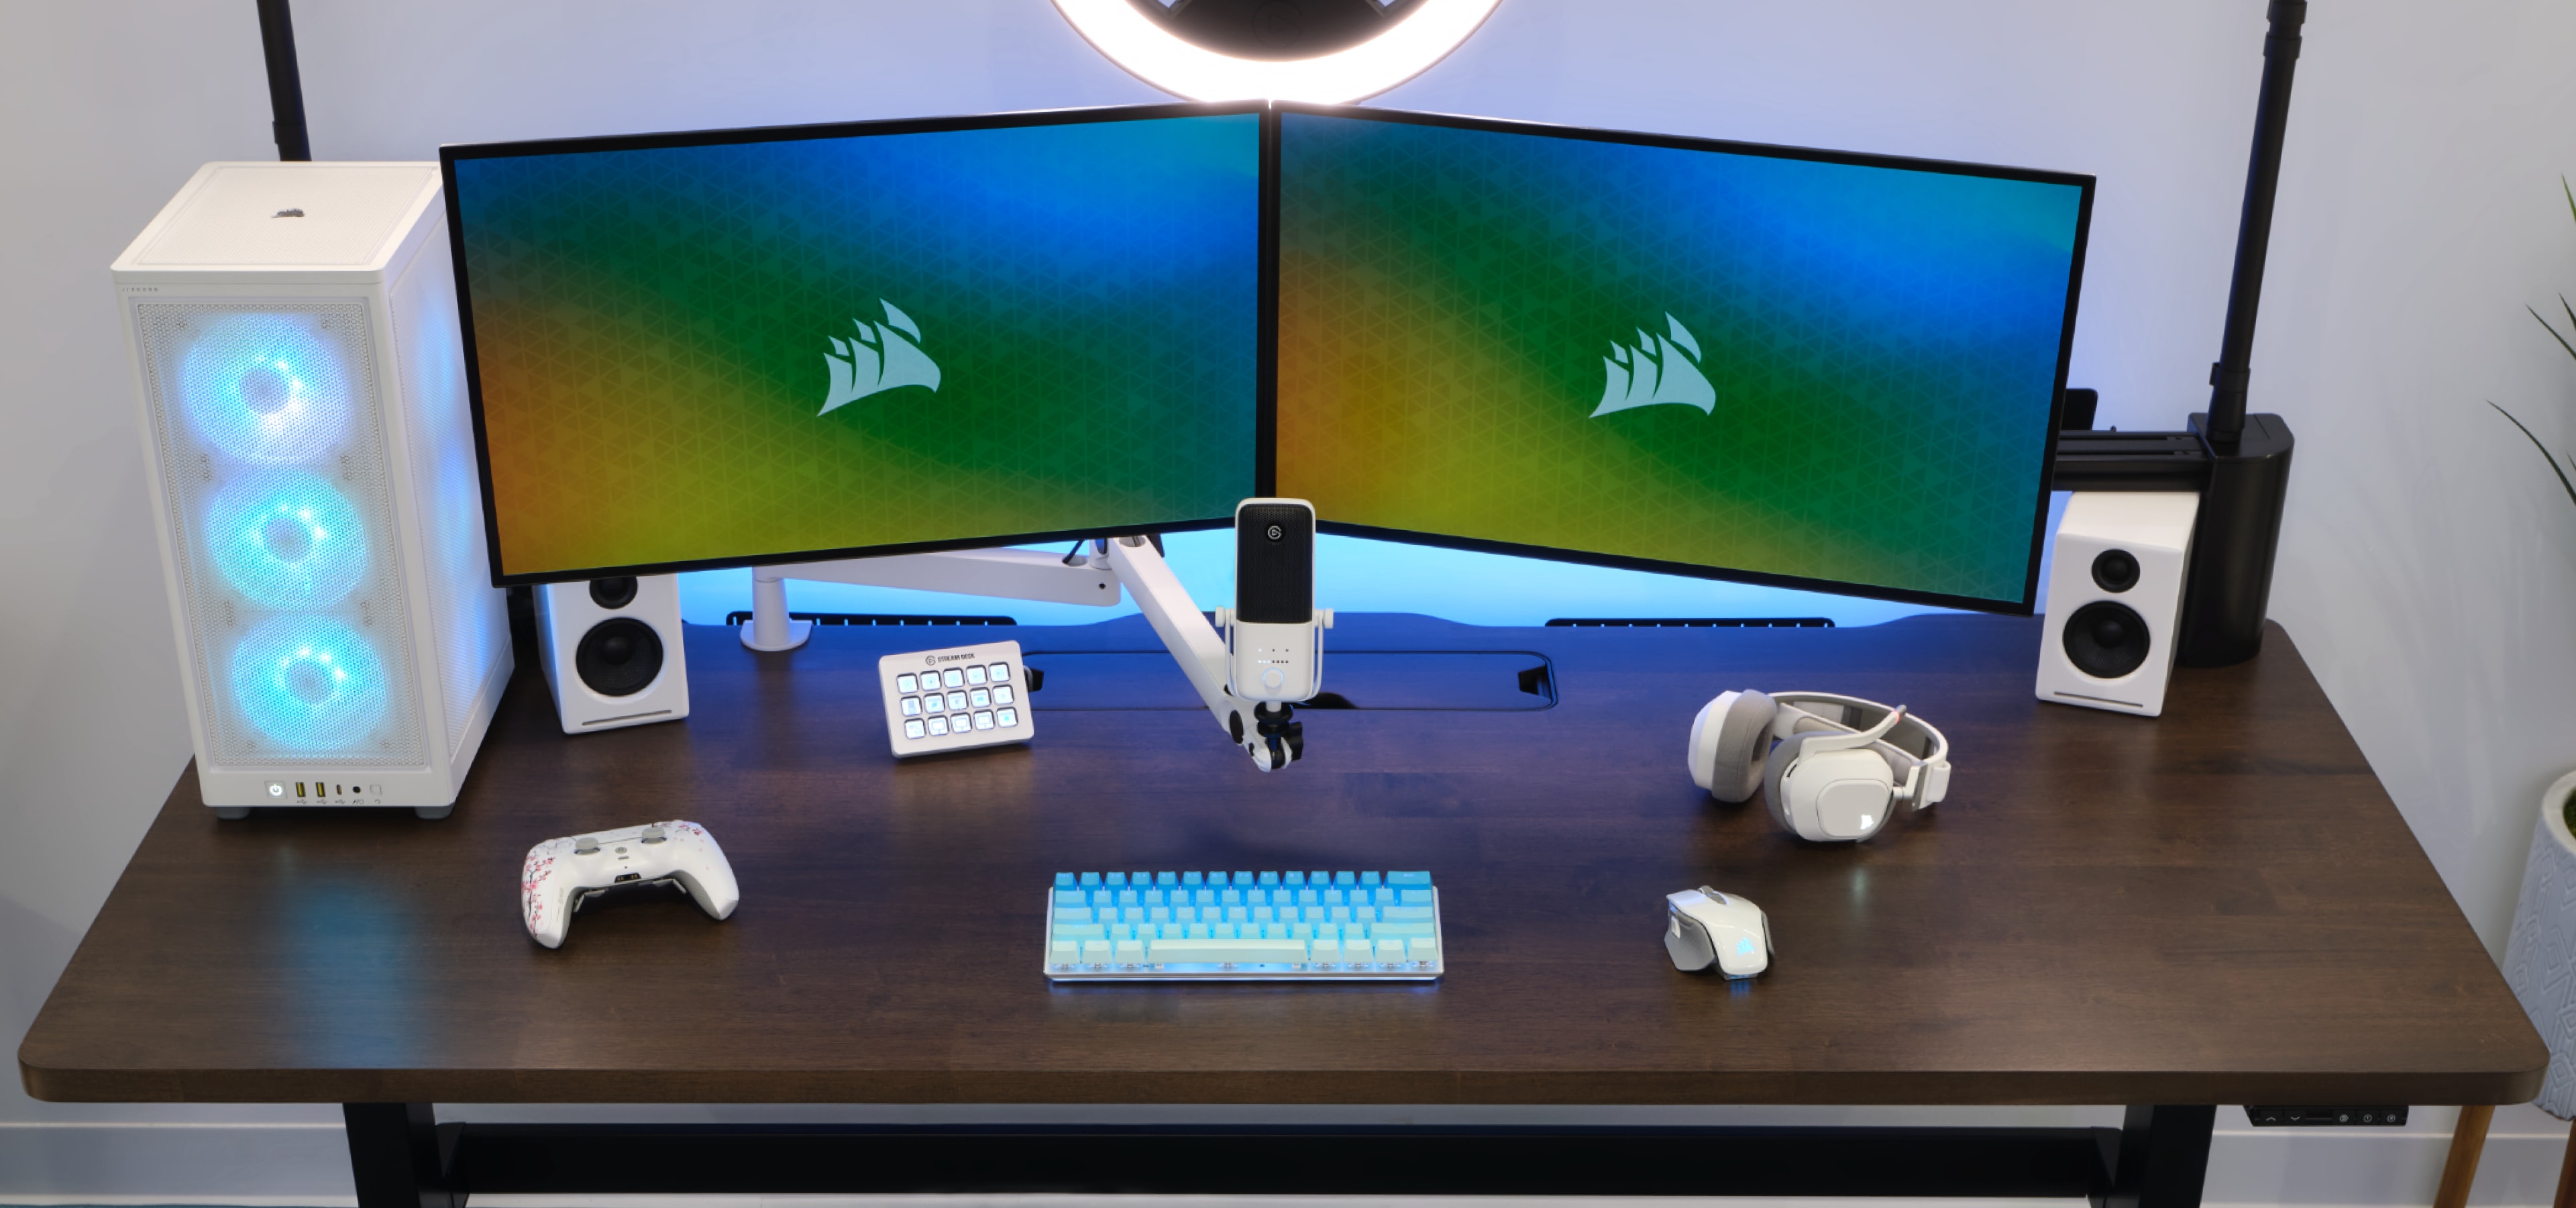 Elevate Your Workspace – CORSAIR Announces Platform:6 Modular Computer Desk